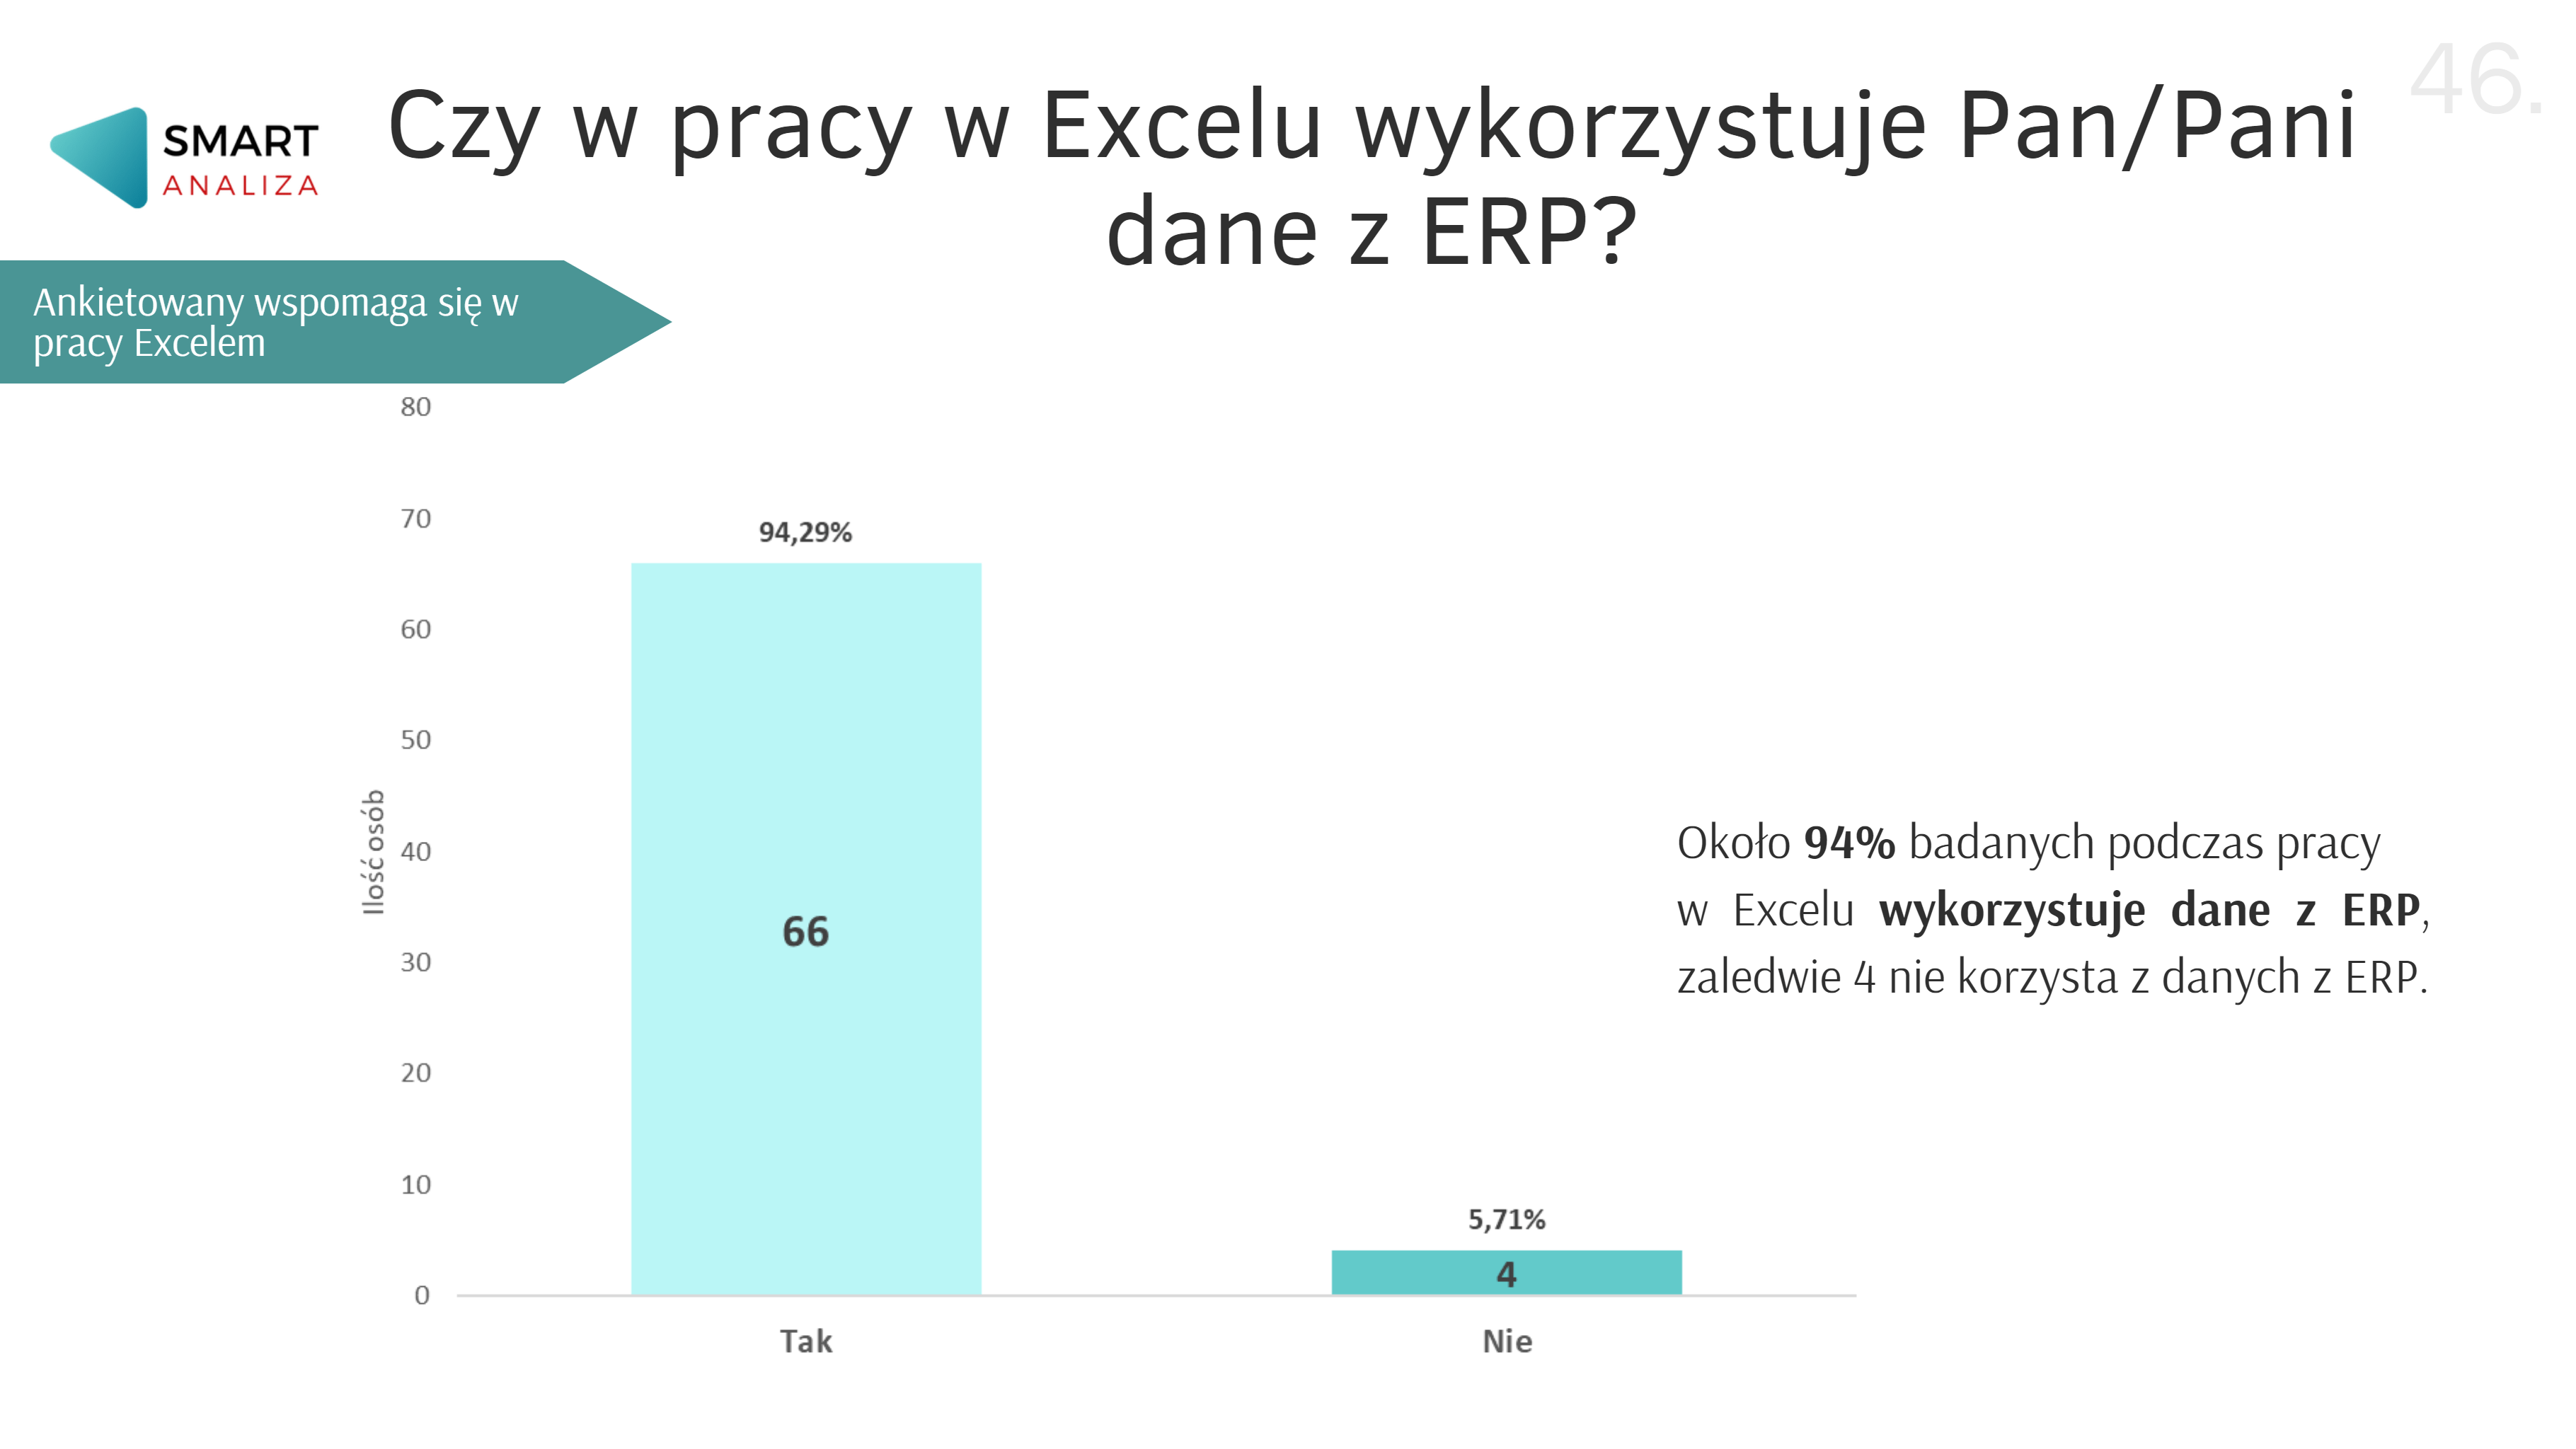 Czy w pracy w Excelu wykorzystuje się dane z ERP